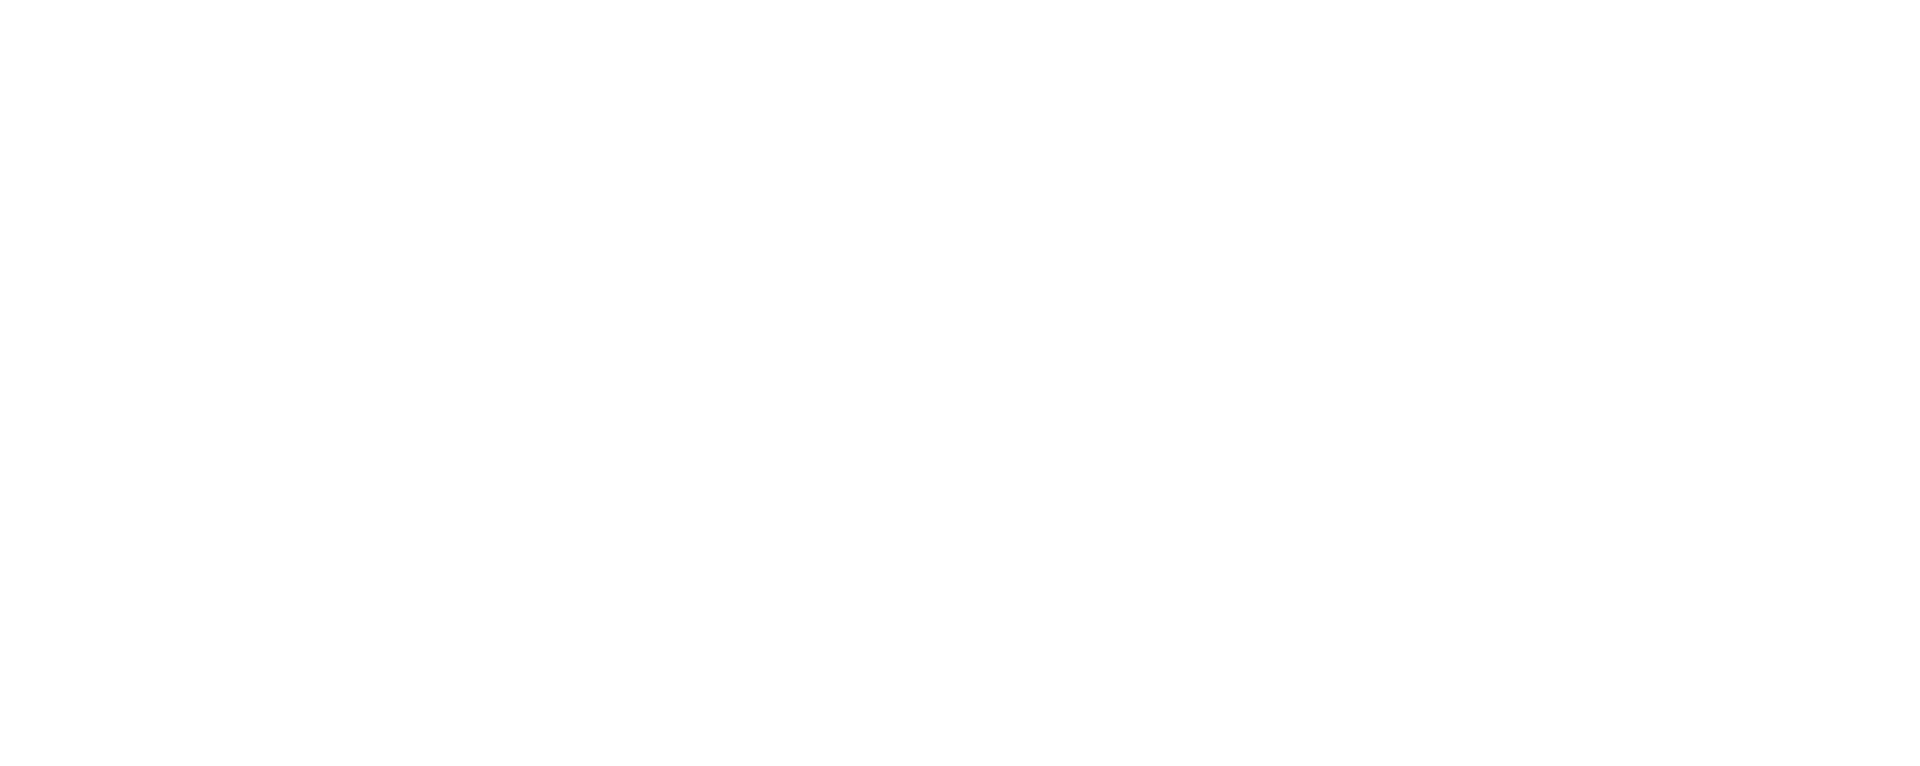 plan de recuperación, transformación y resiliencia